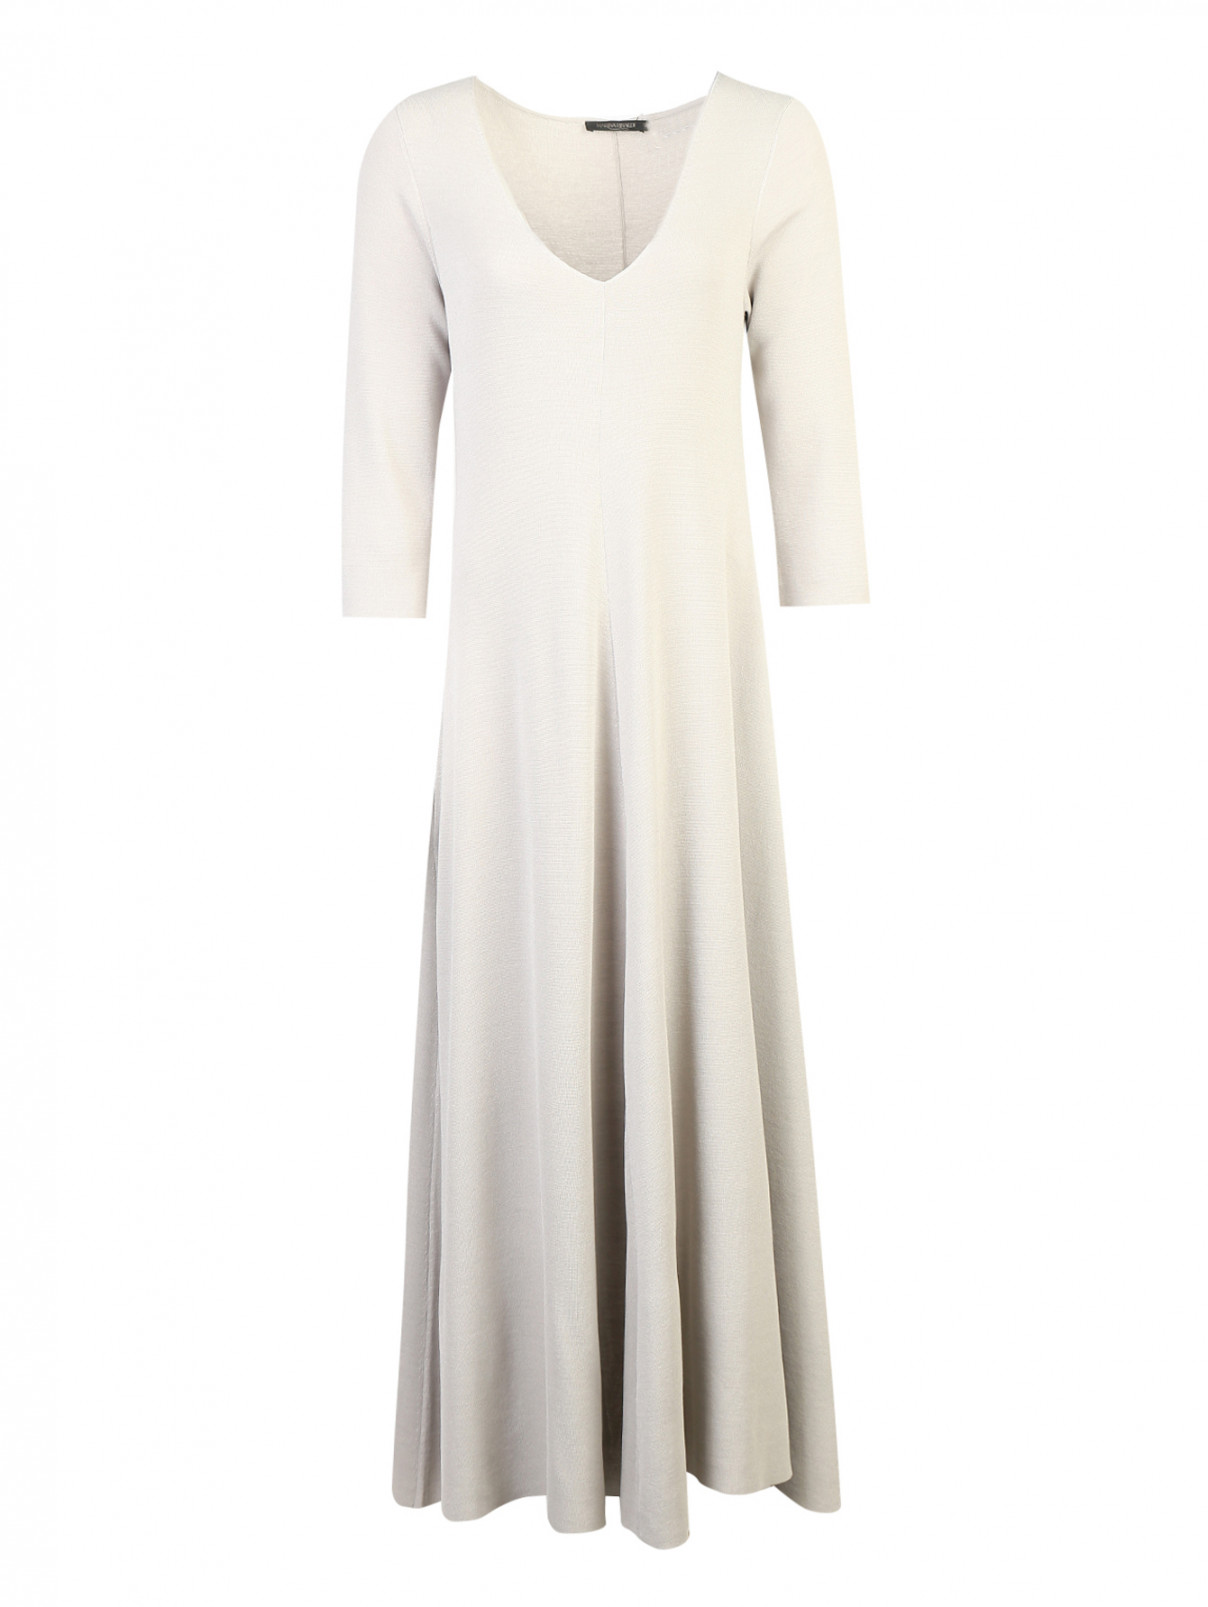 Платье трикотажное с расклешеным низом Marina Rinaldi  –  Общий вид  – Цвет:  Серый